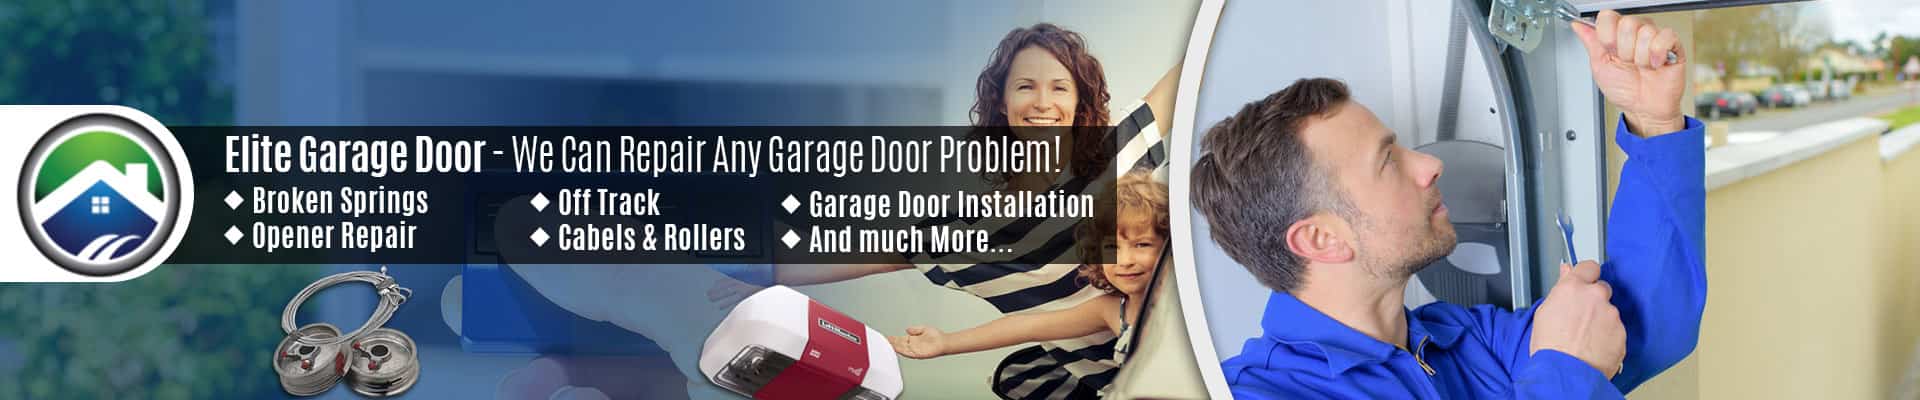 Garage Door Repair Service Burlington – Elite Garage Door of Burlington 